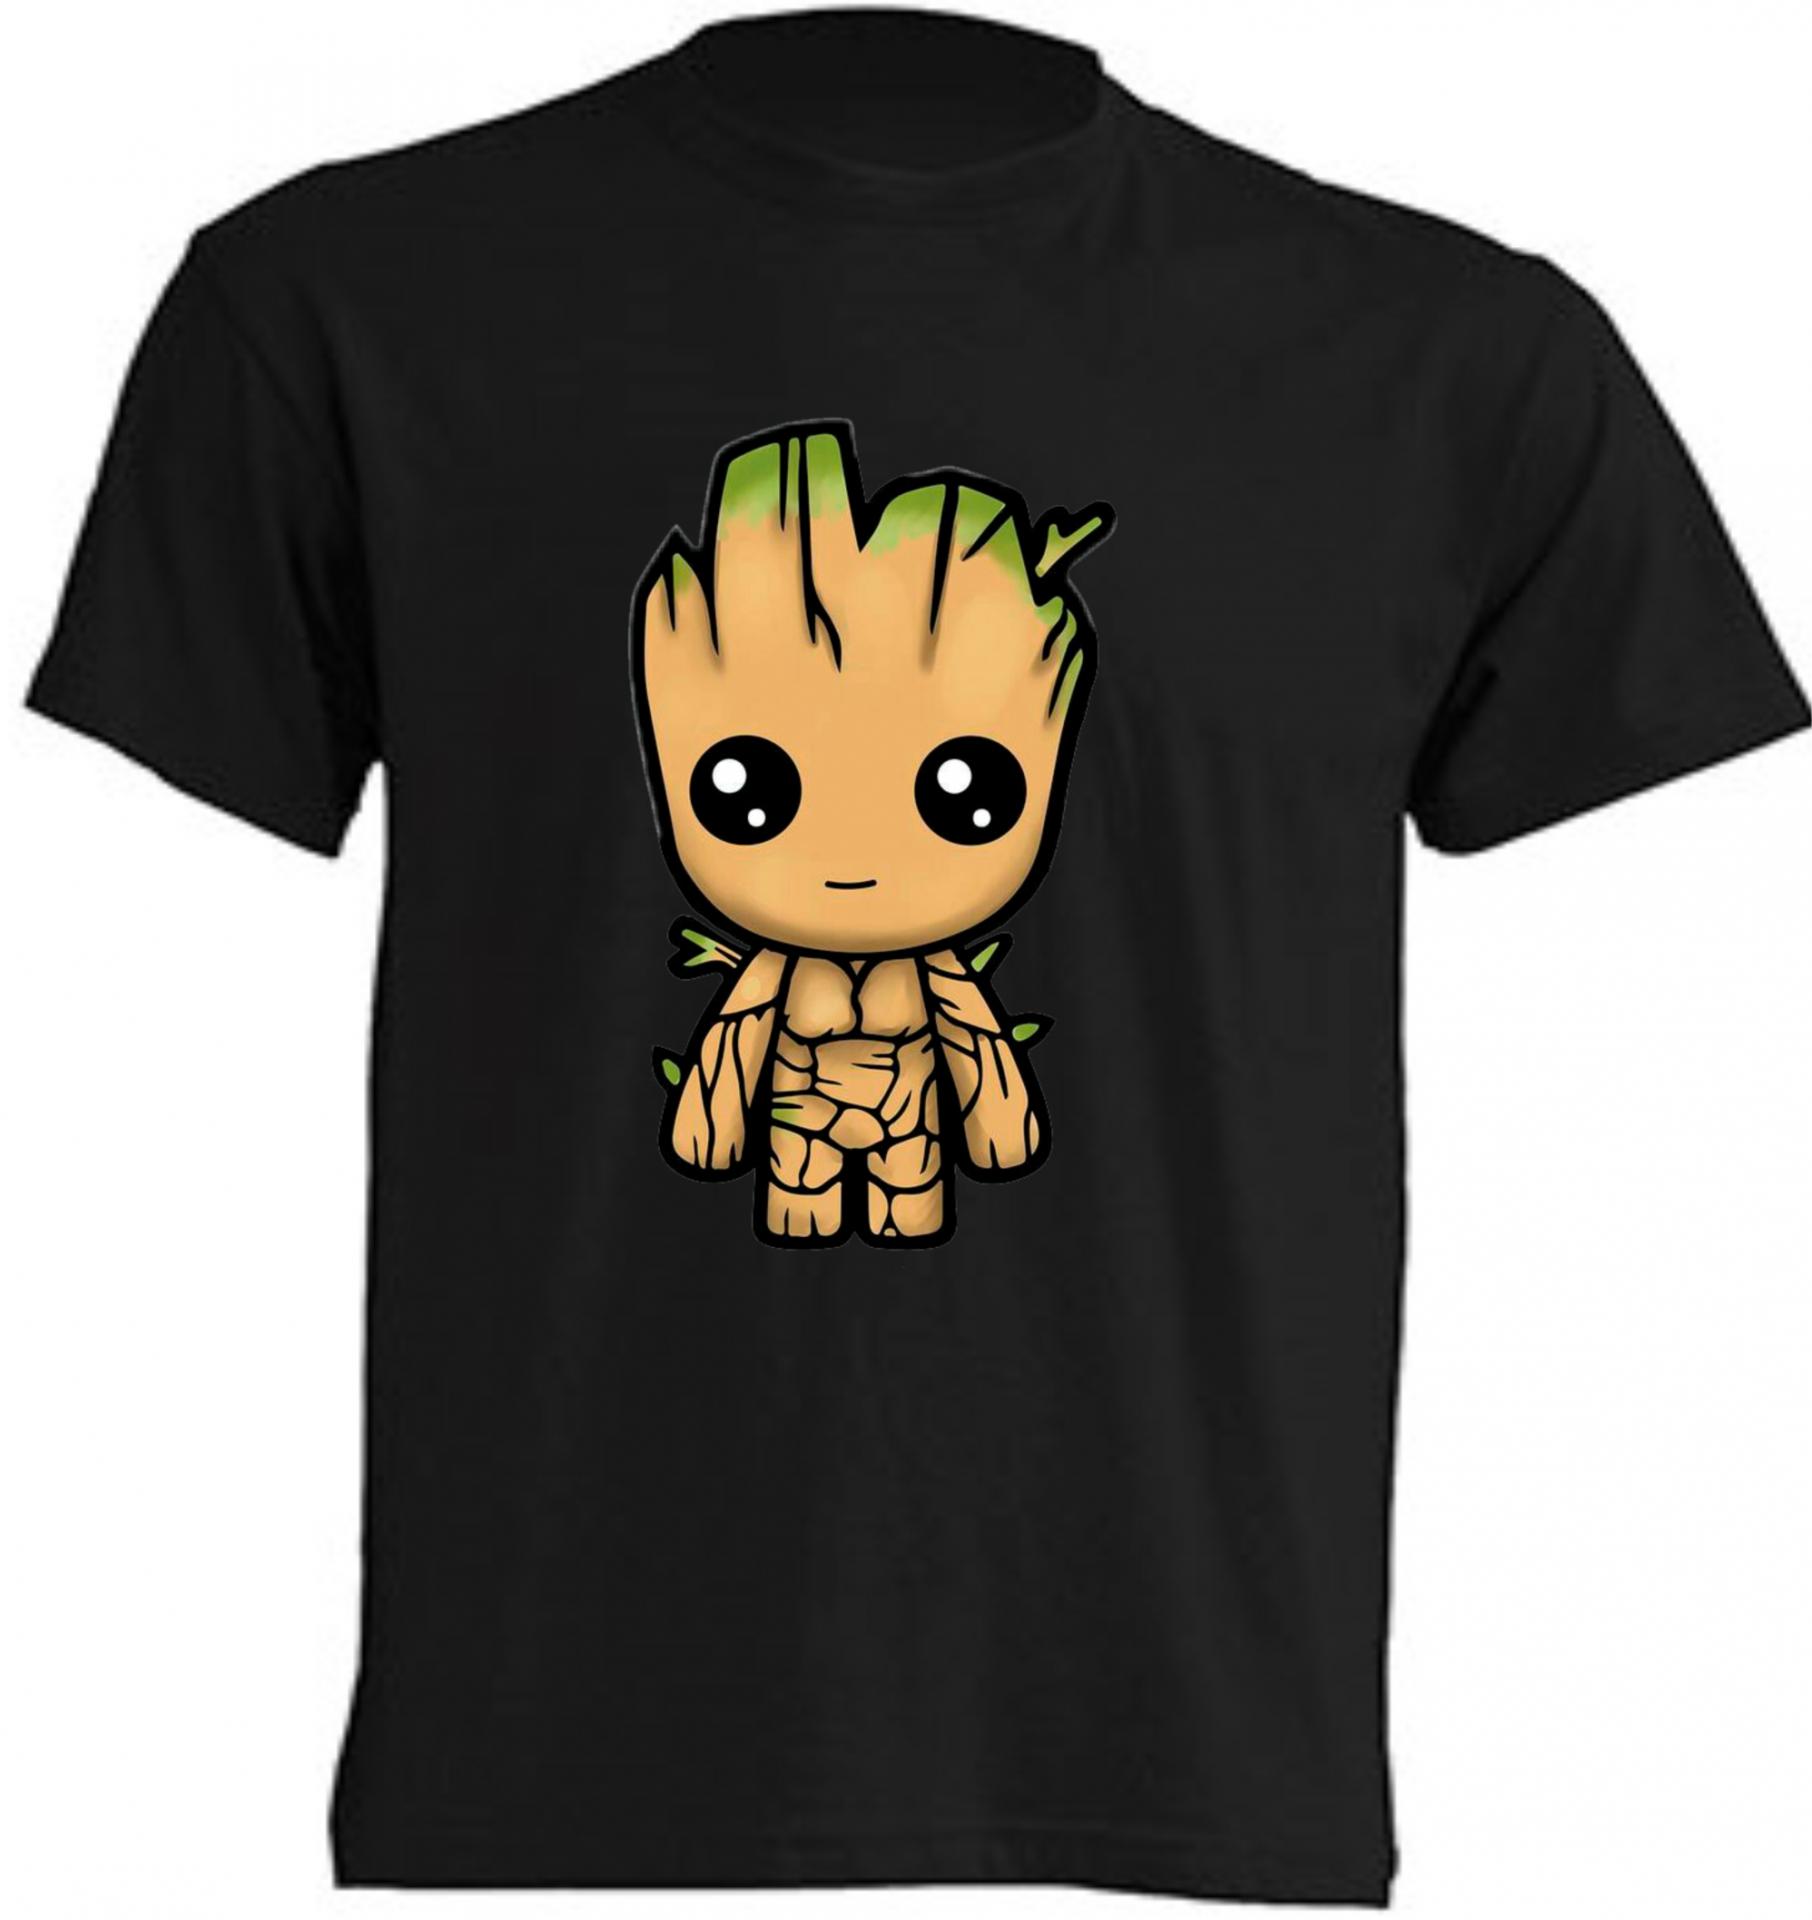 Camiseta Groot, Groot merchandising y más